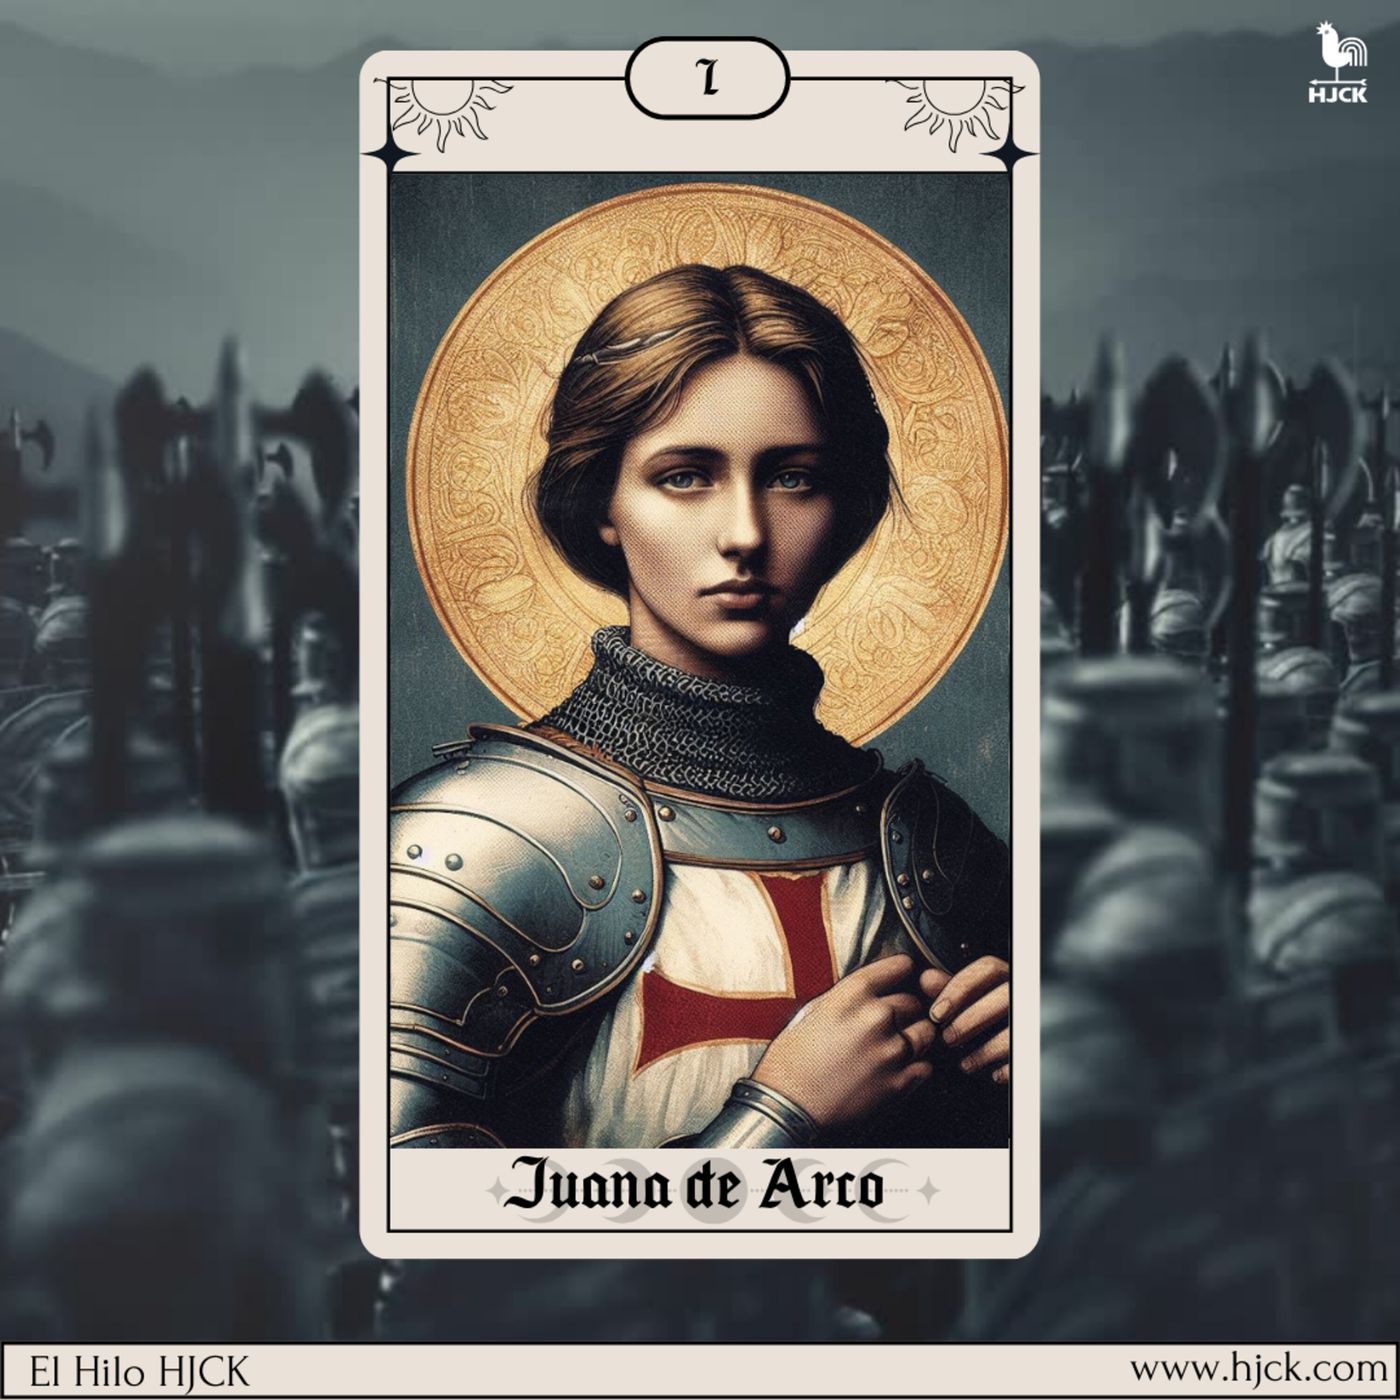 Esta es la historia de Juana del Arco